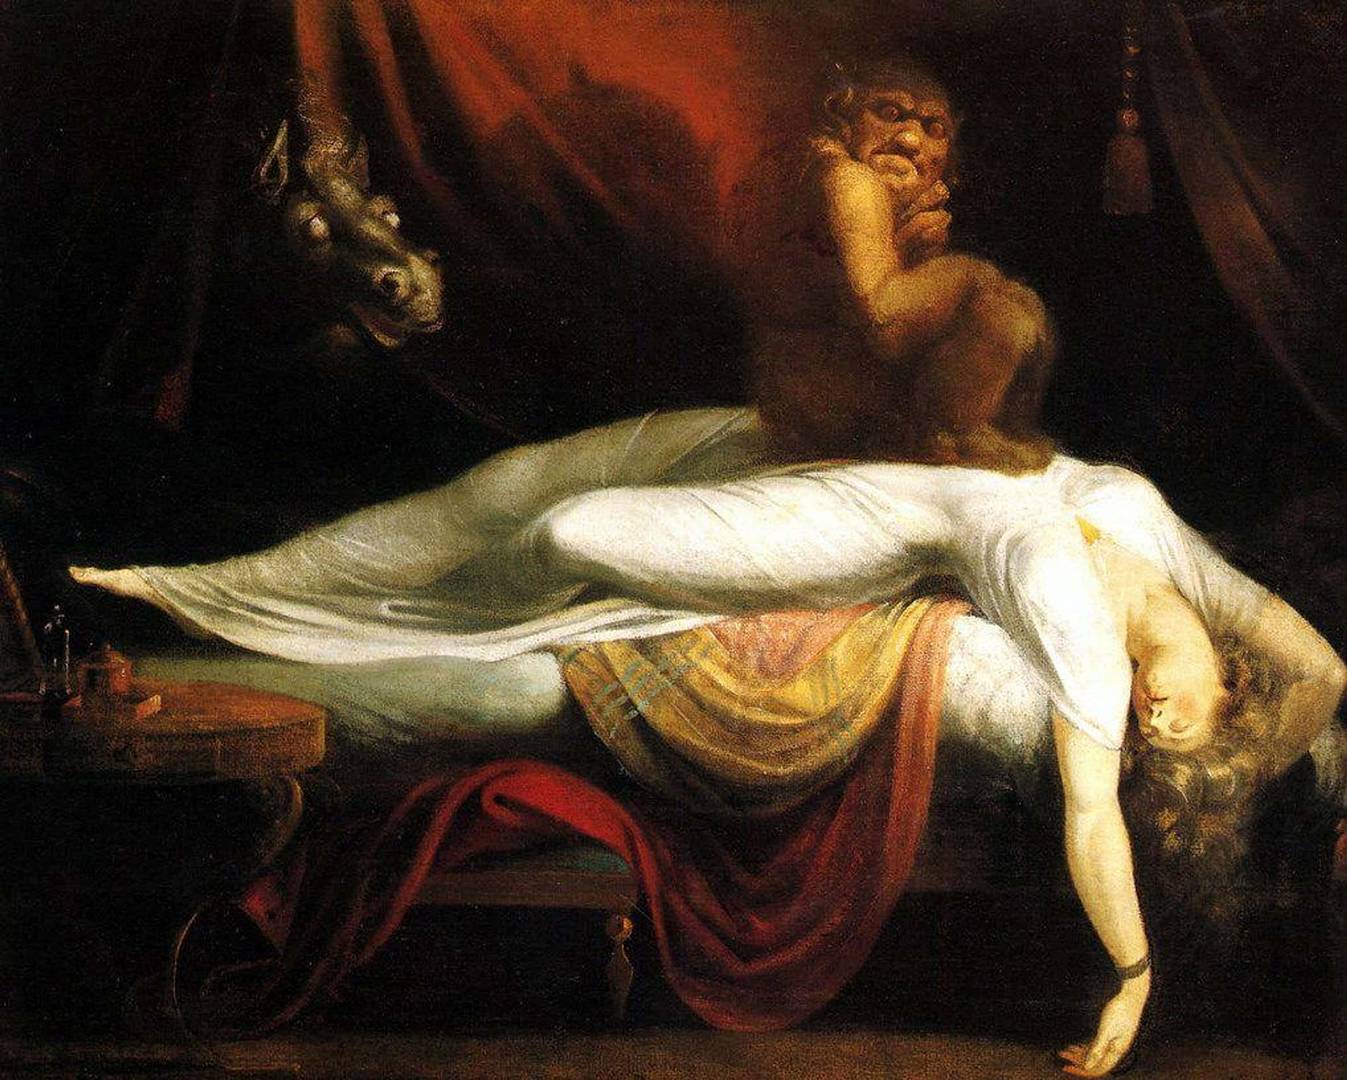 Иоганн Генрих Фюсли. Ночной кошмар. 1790-1791